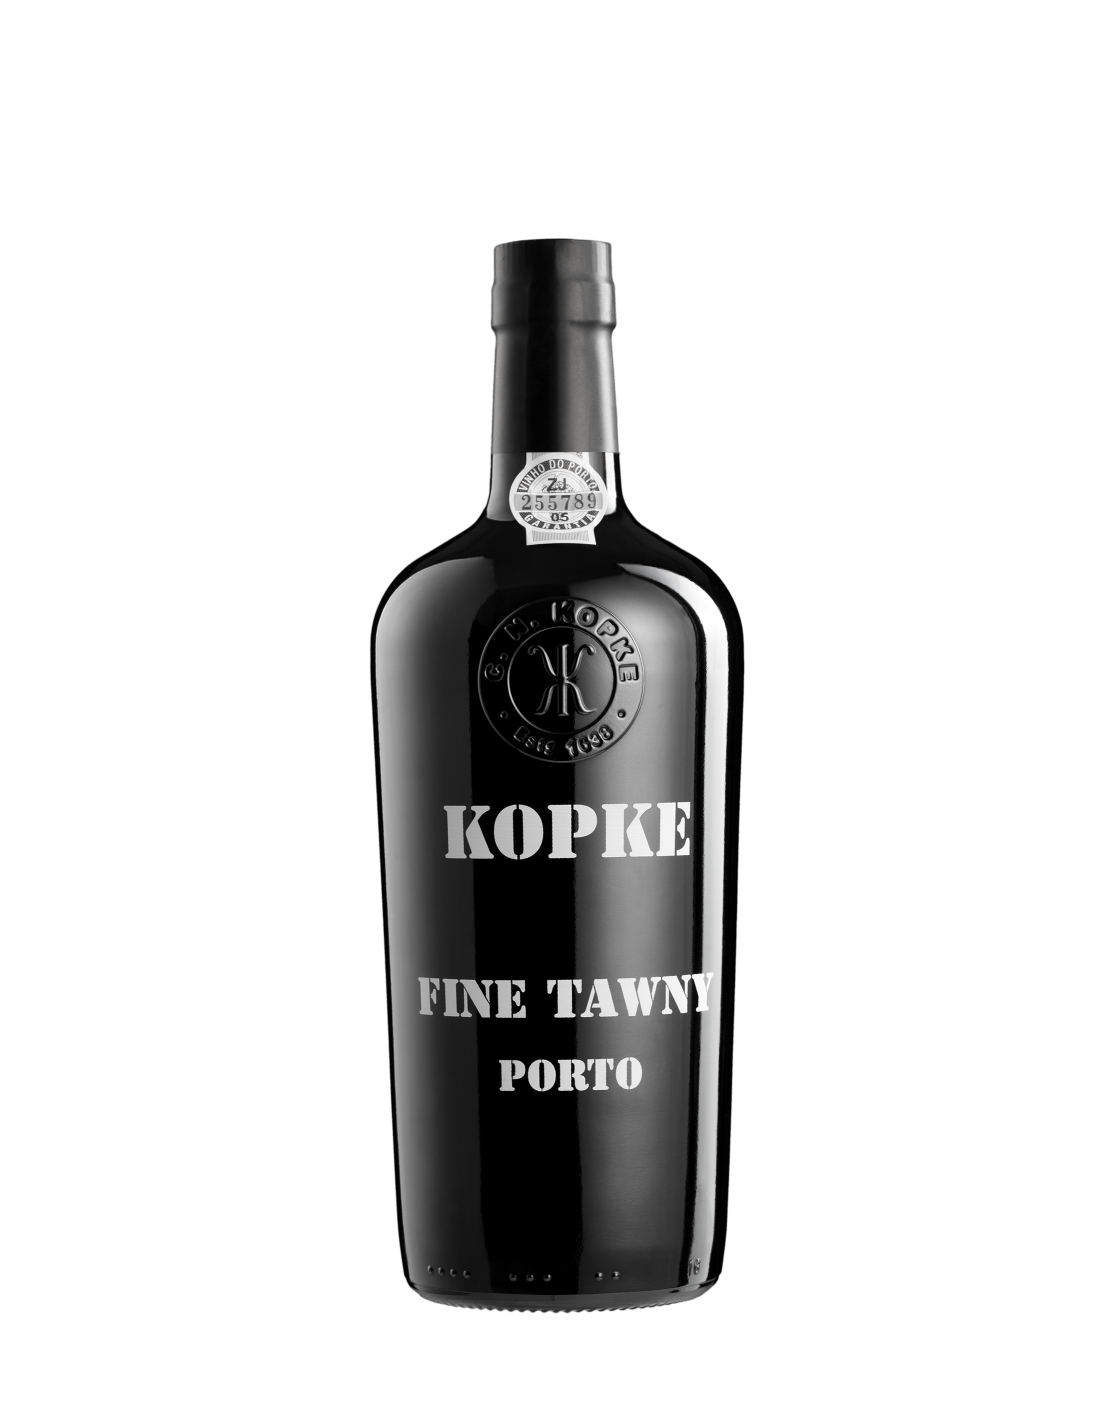 Vin porto rosu dulce Kopke Tawny Douro, 0.75L, 19.5% alc., Portugalia alcooldiscount.ro